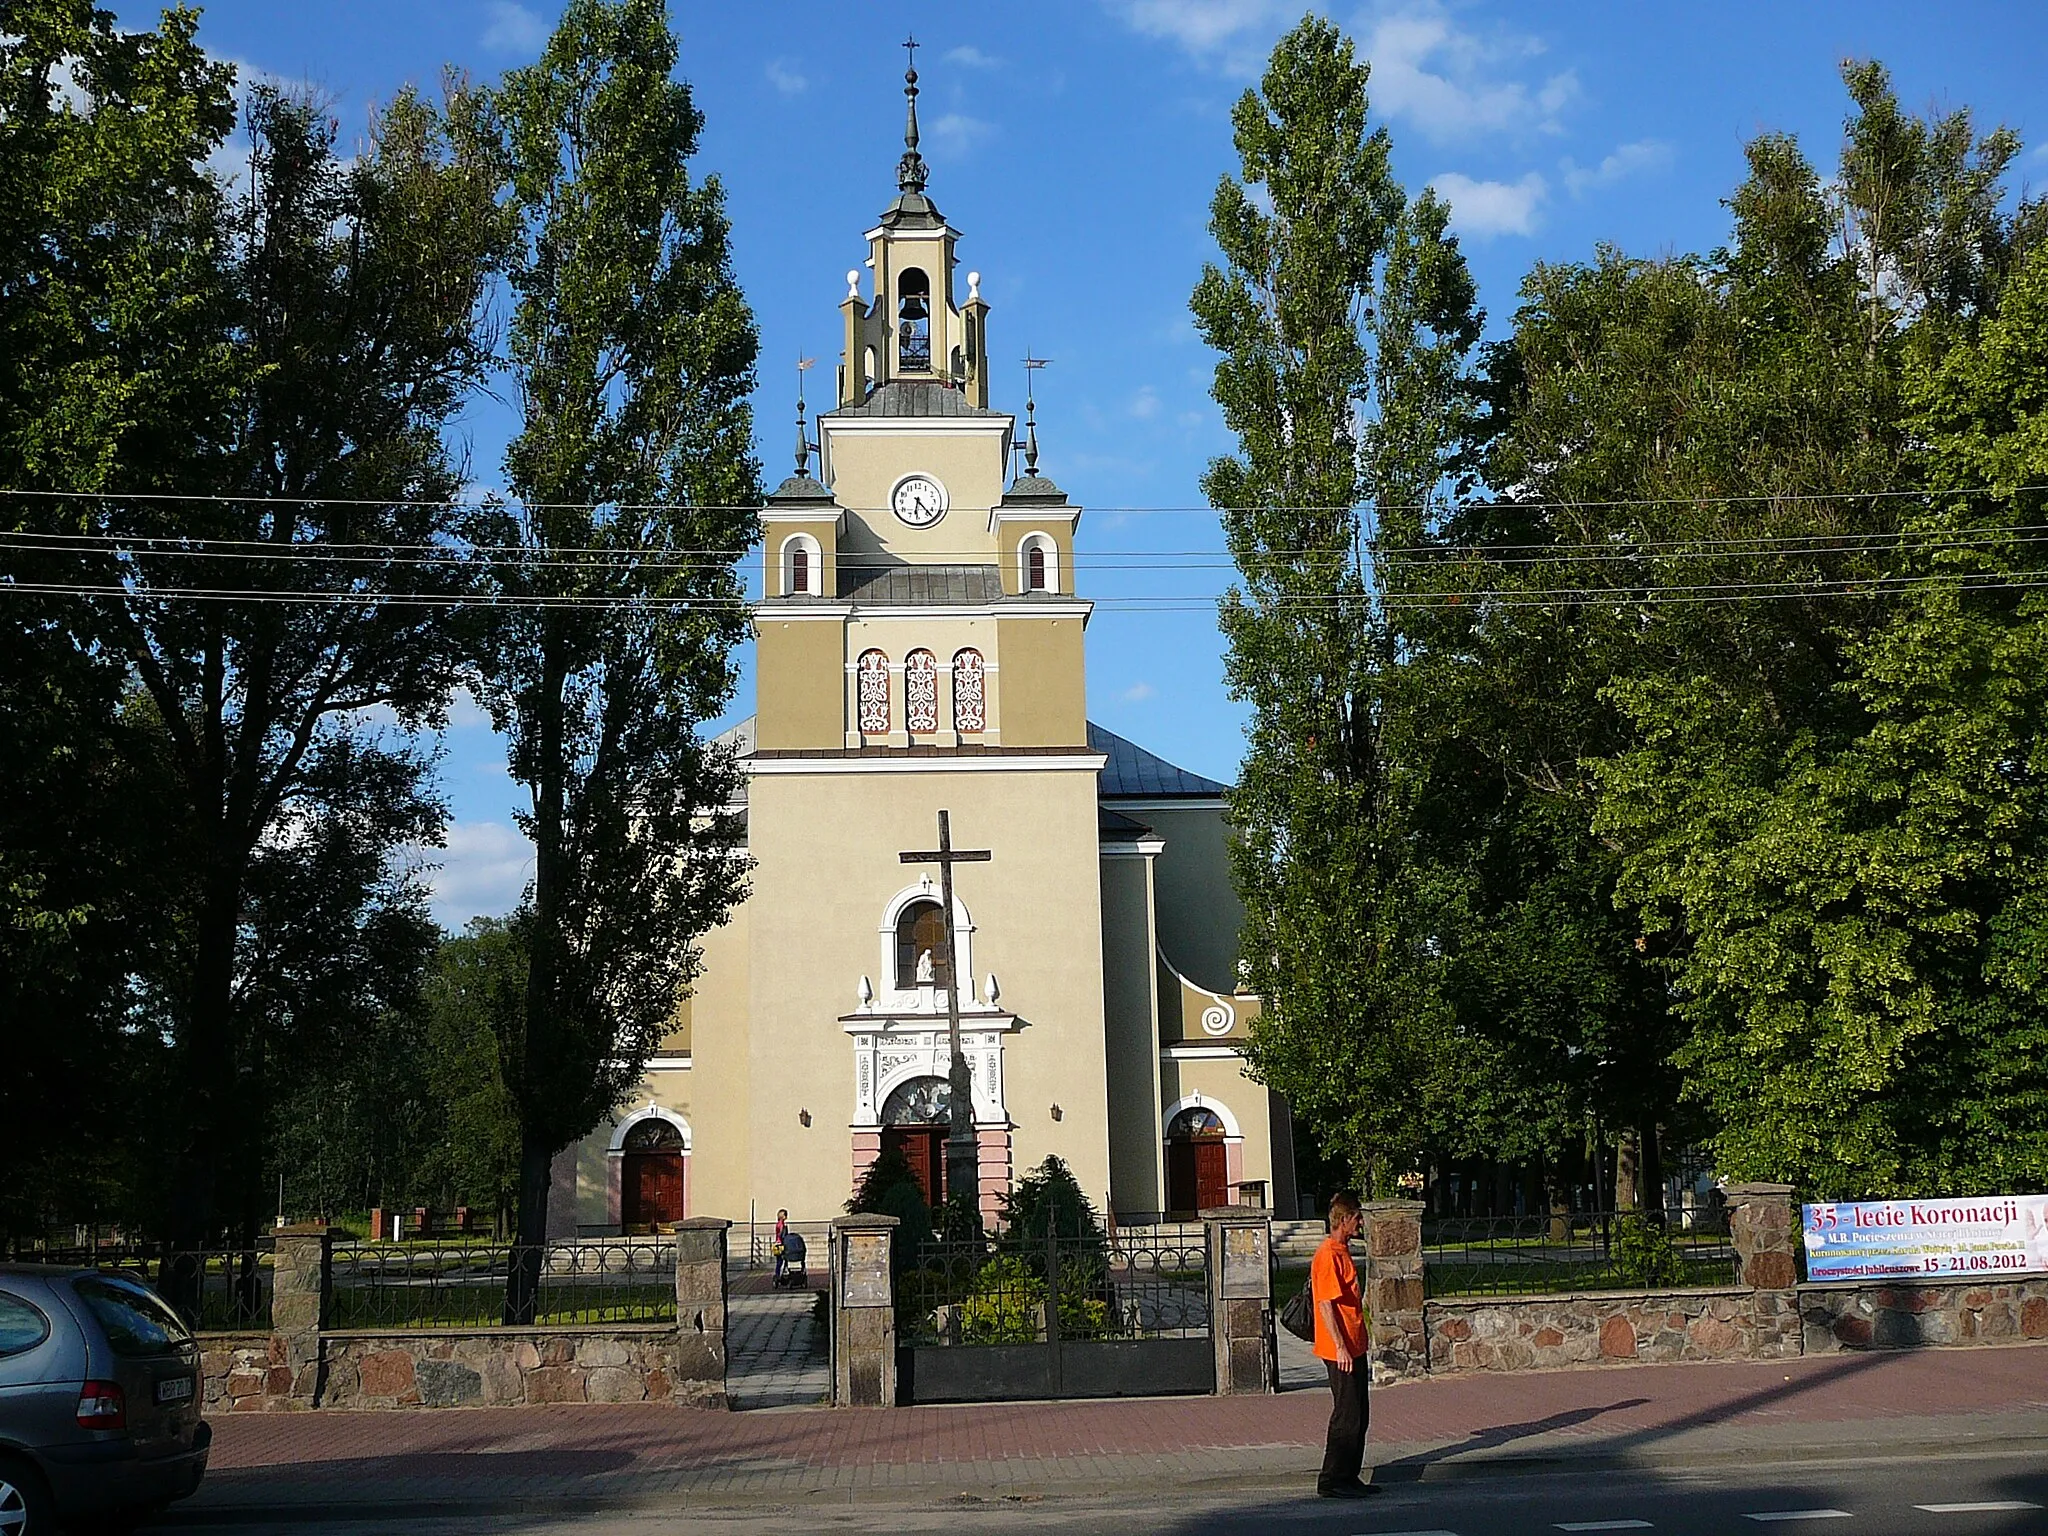 Photo showing: Widok na kościół pw. Świętej Trójcy z ulicy Krakowskiej. Kościół został zbudowany w latach 1932-1957 według projektu Stefana Szyllera z Warszawy w stylu neorenesansowym.